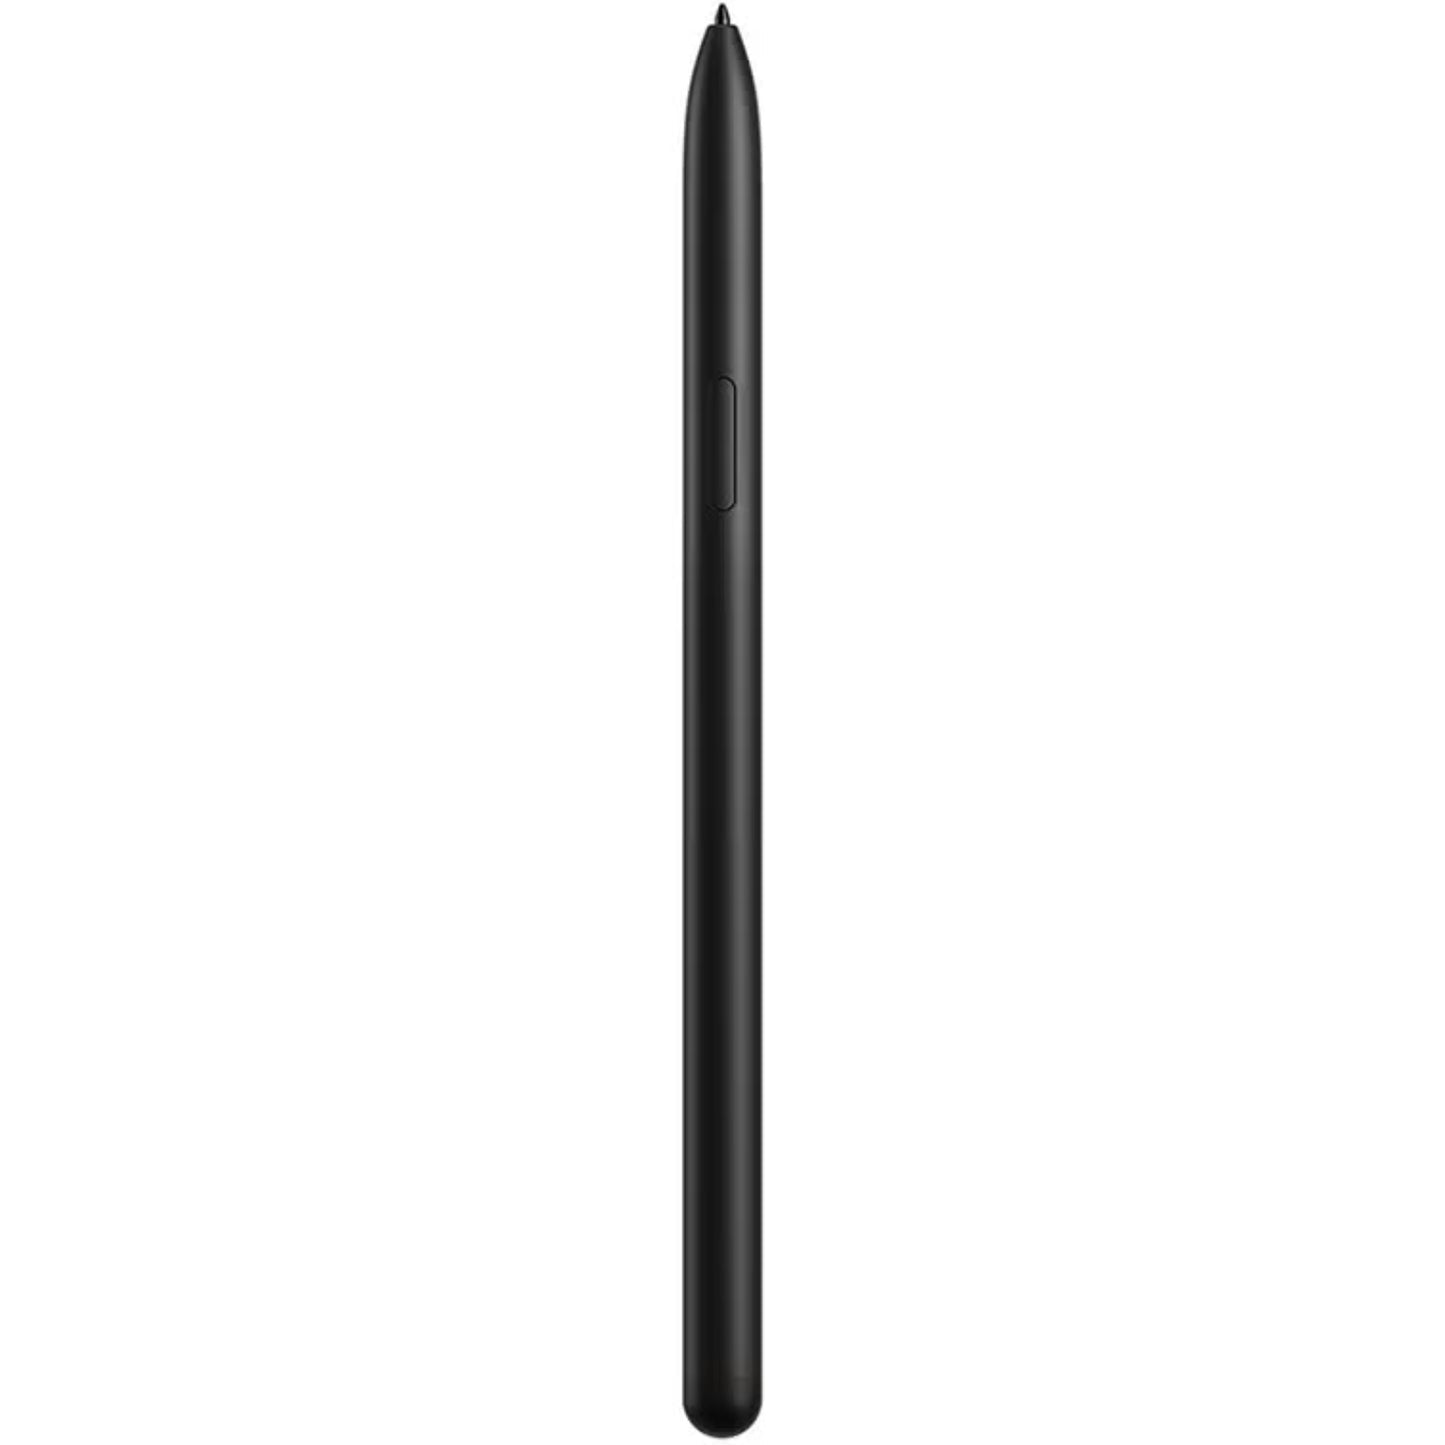 Samsung Galaxy Tab S9 X716 5G (8GB ram) - MyMobile